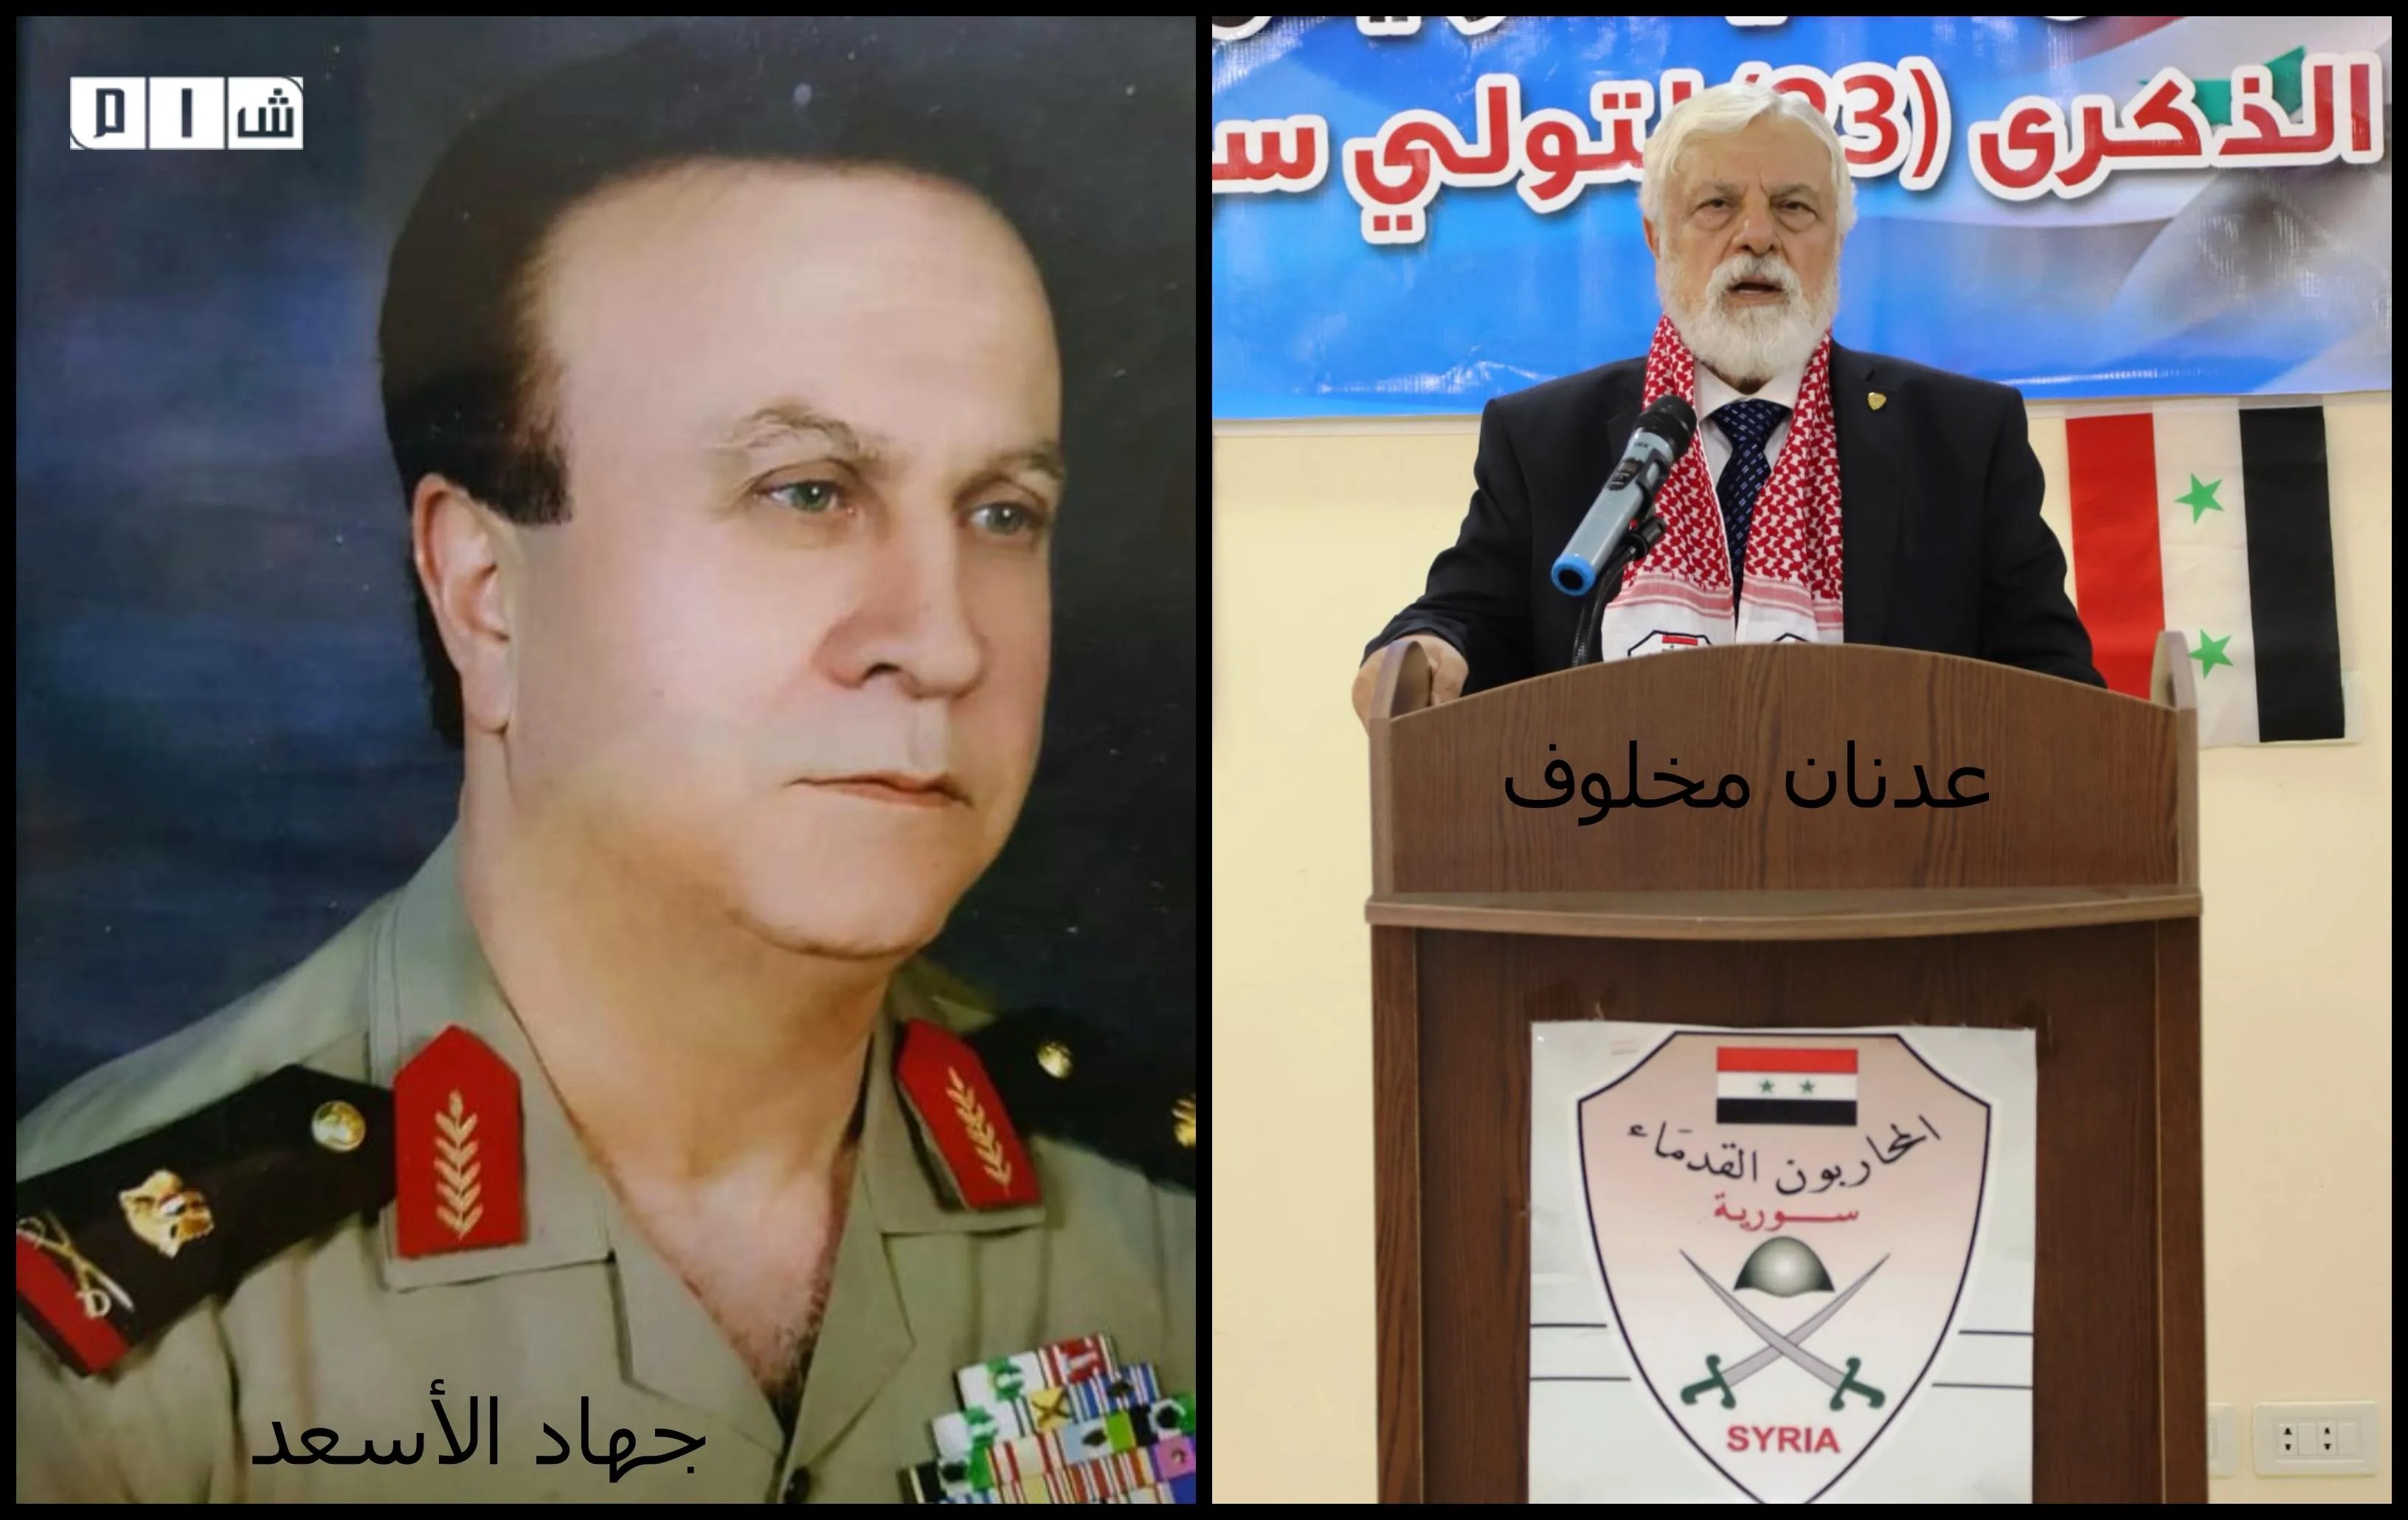 خلفاً للمجرم "عدنان مخلوف" .. النظام يعيين "الخازم" رئيساً لـ"رابطة المحاربين القدماء"